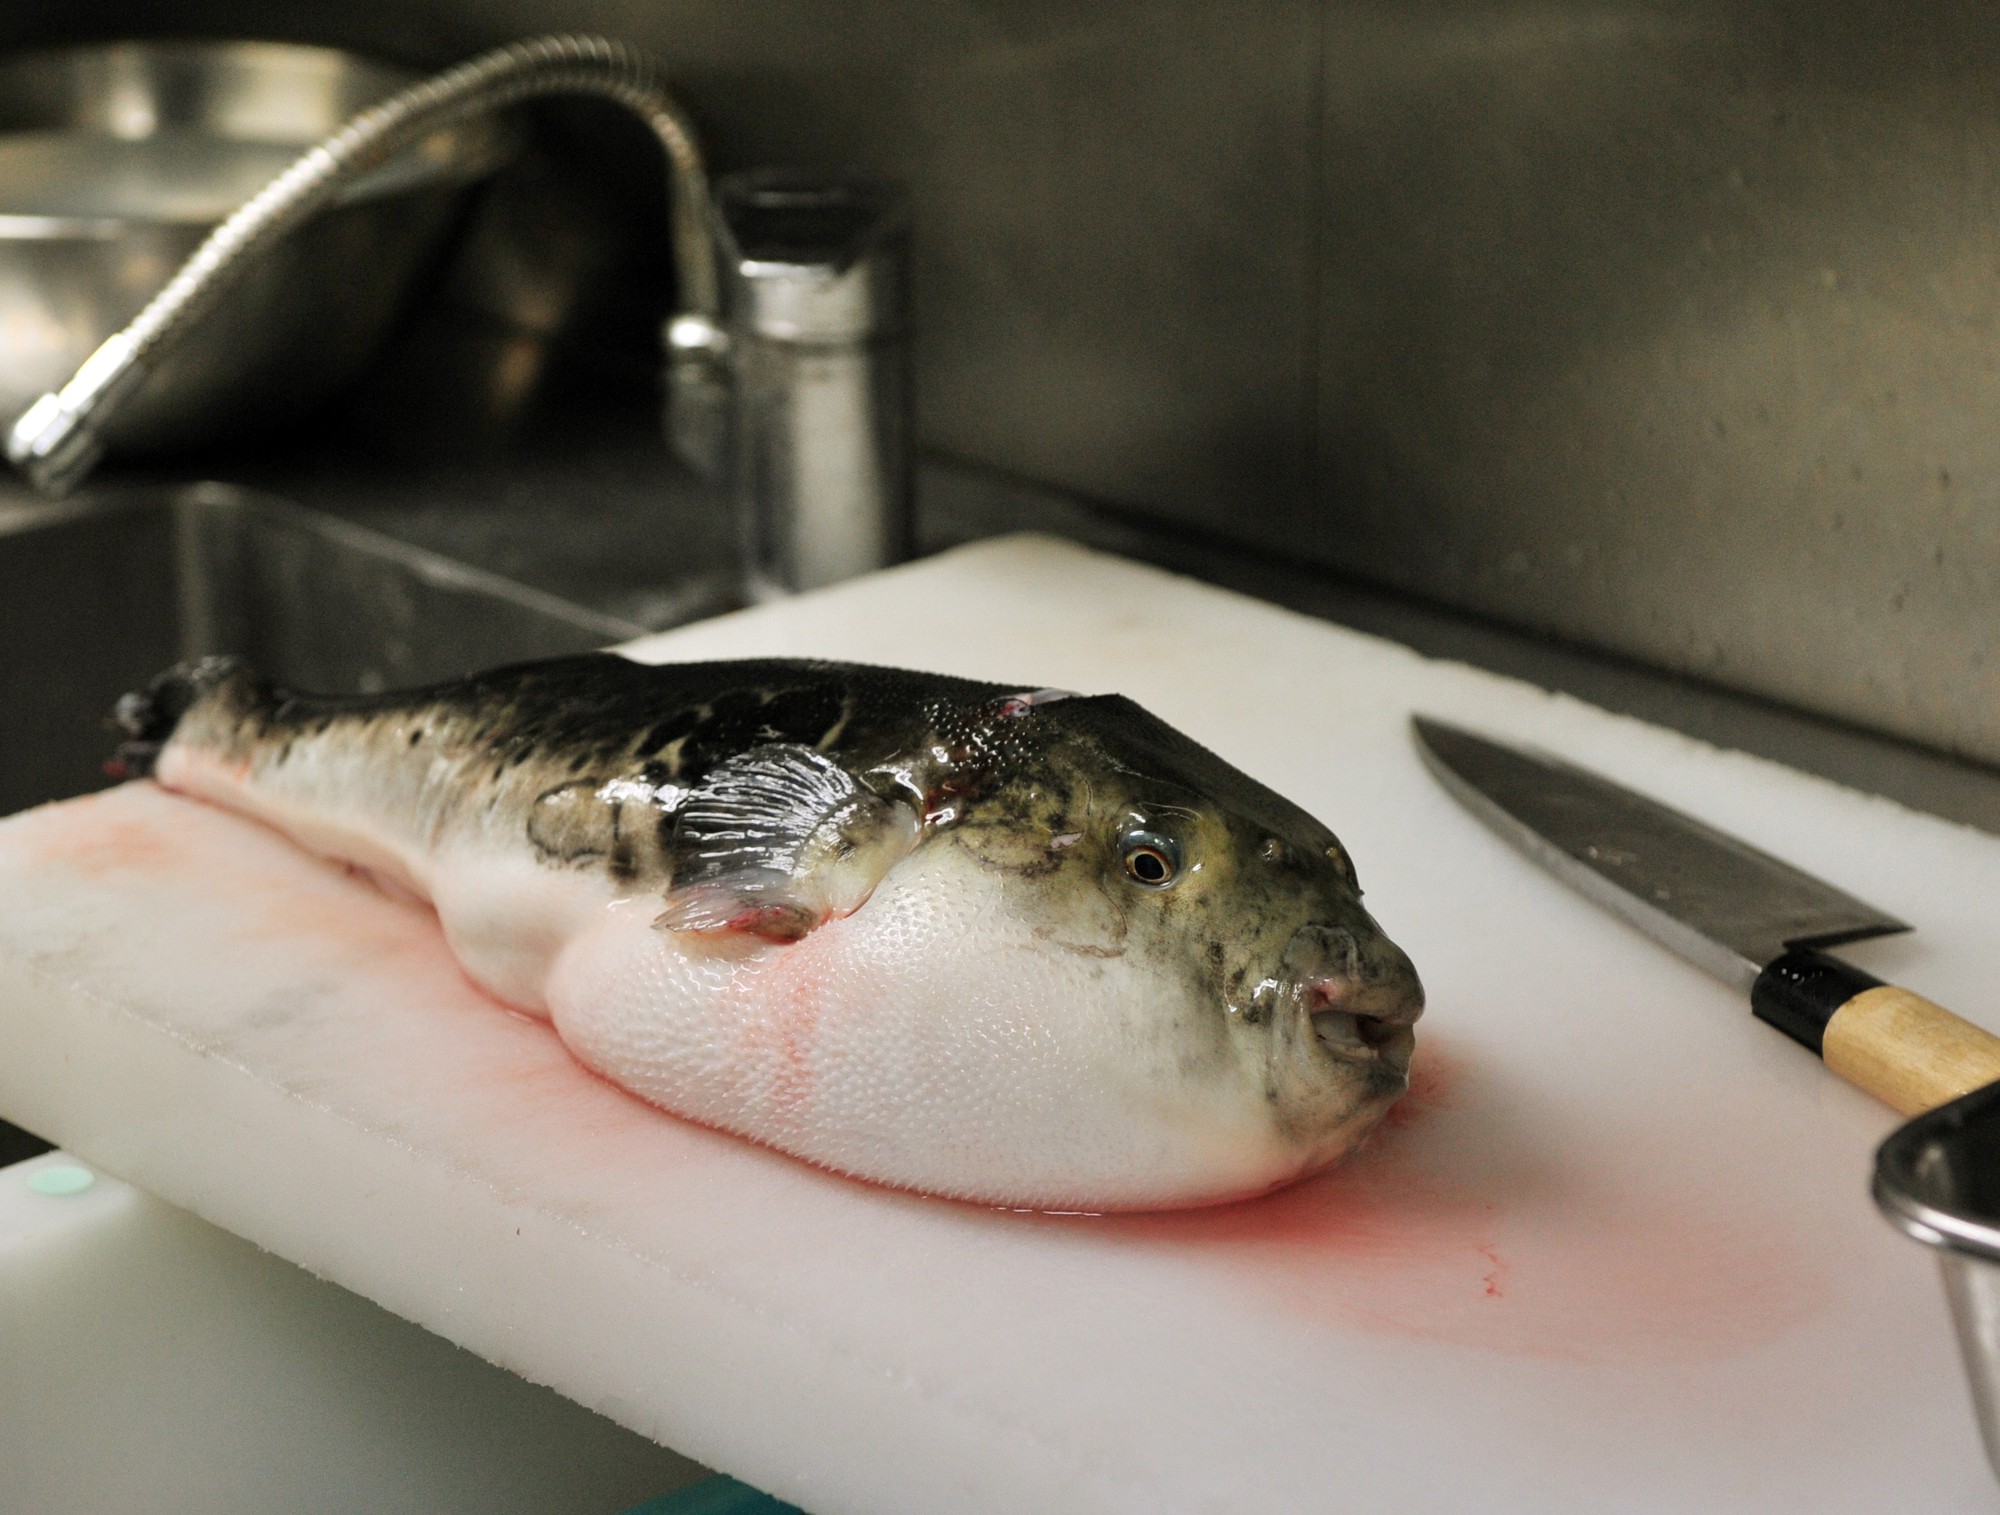 7,5 triệu đồng/100g thịt, ai mà ngờ loại cá vừa xấu xí vừa cực độc này lại đáng giá ở Nhật Bản đến thế-6